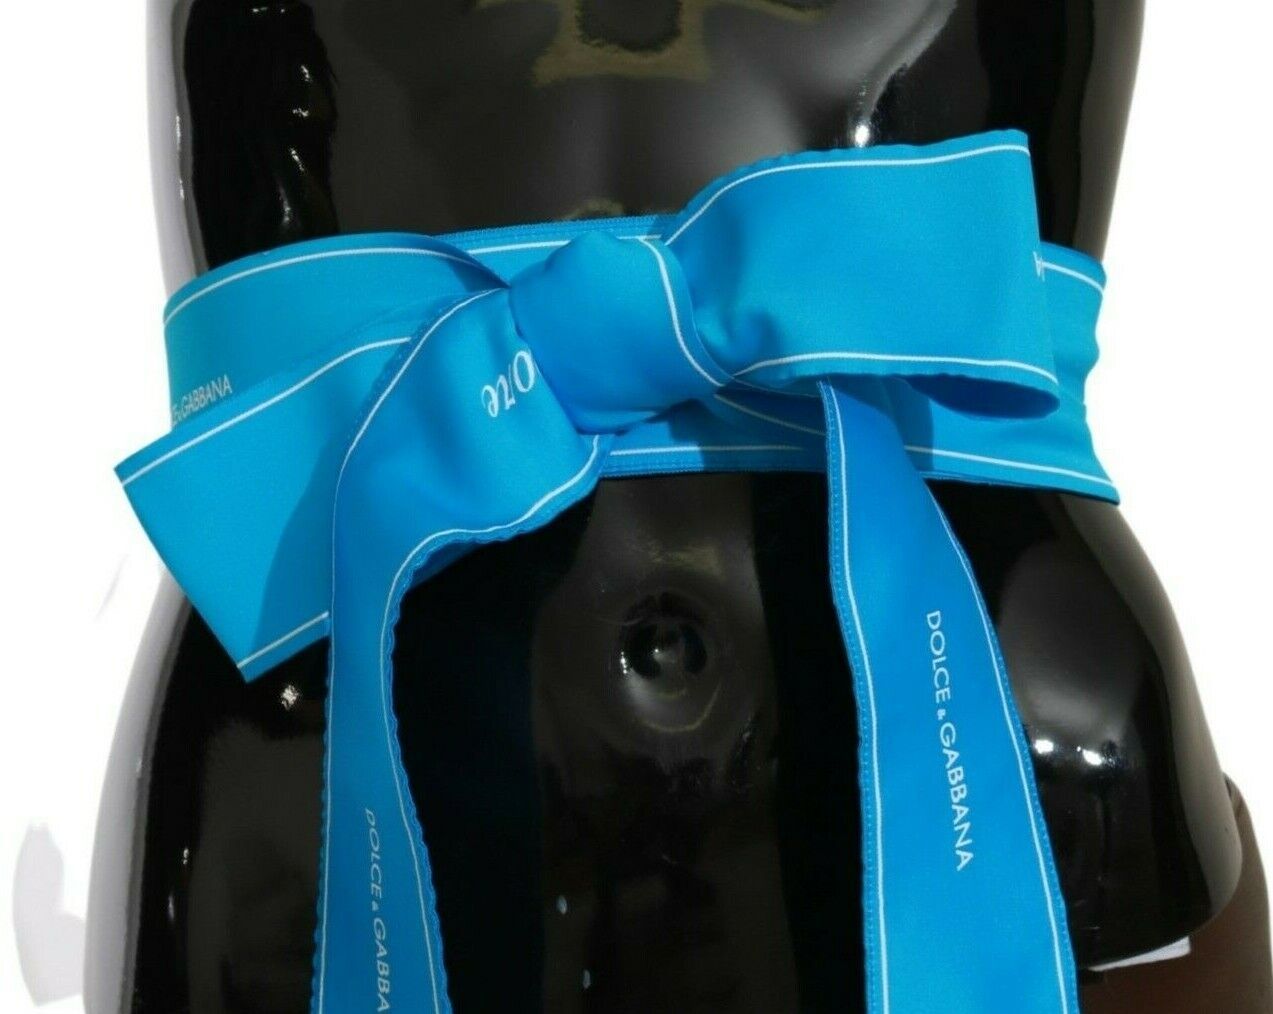 Dolce & Gabbana Blue Waist Ribbon Wide Bow Belt